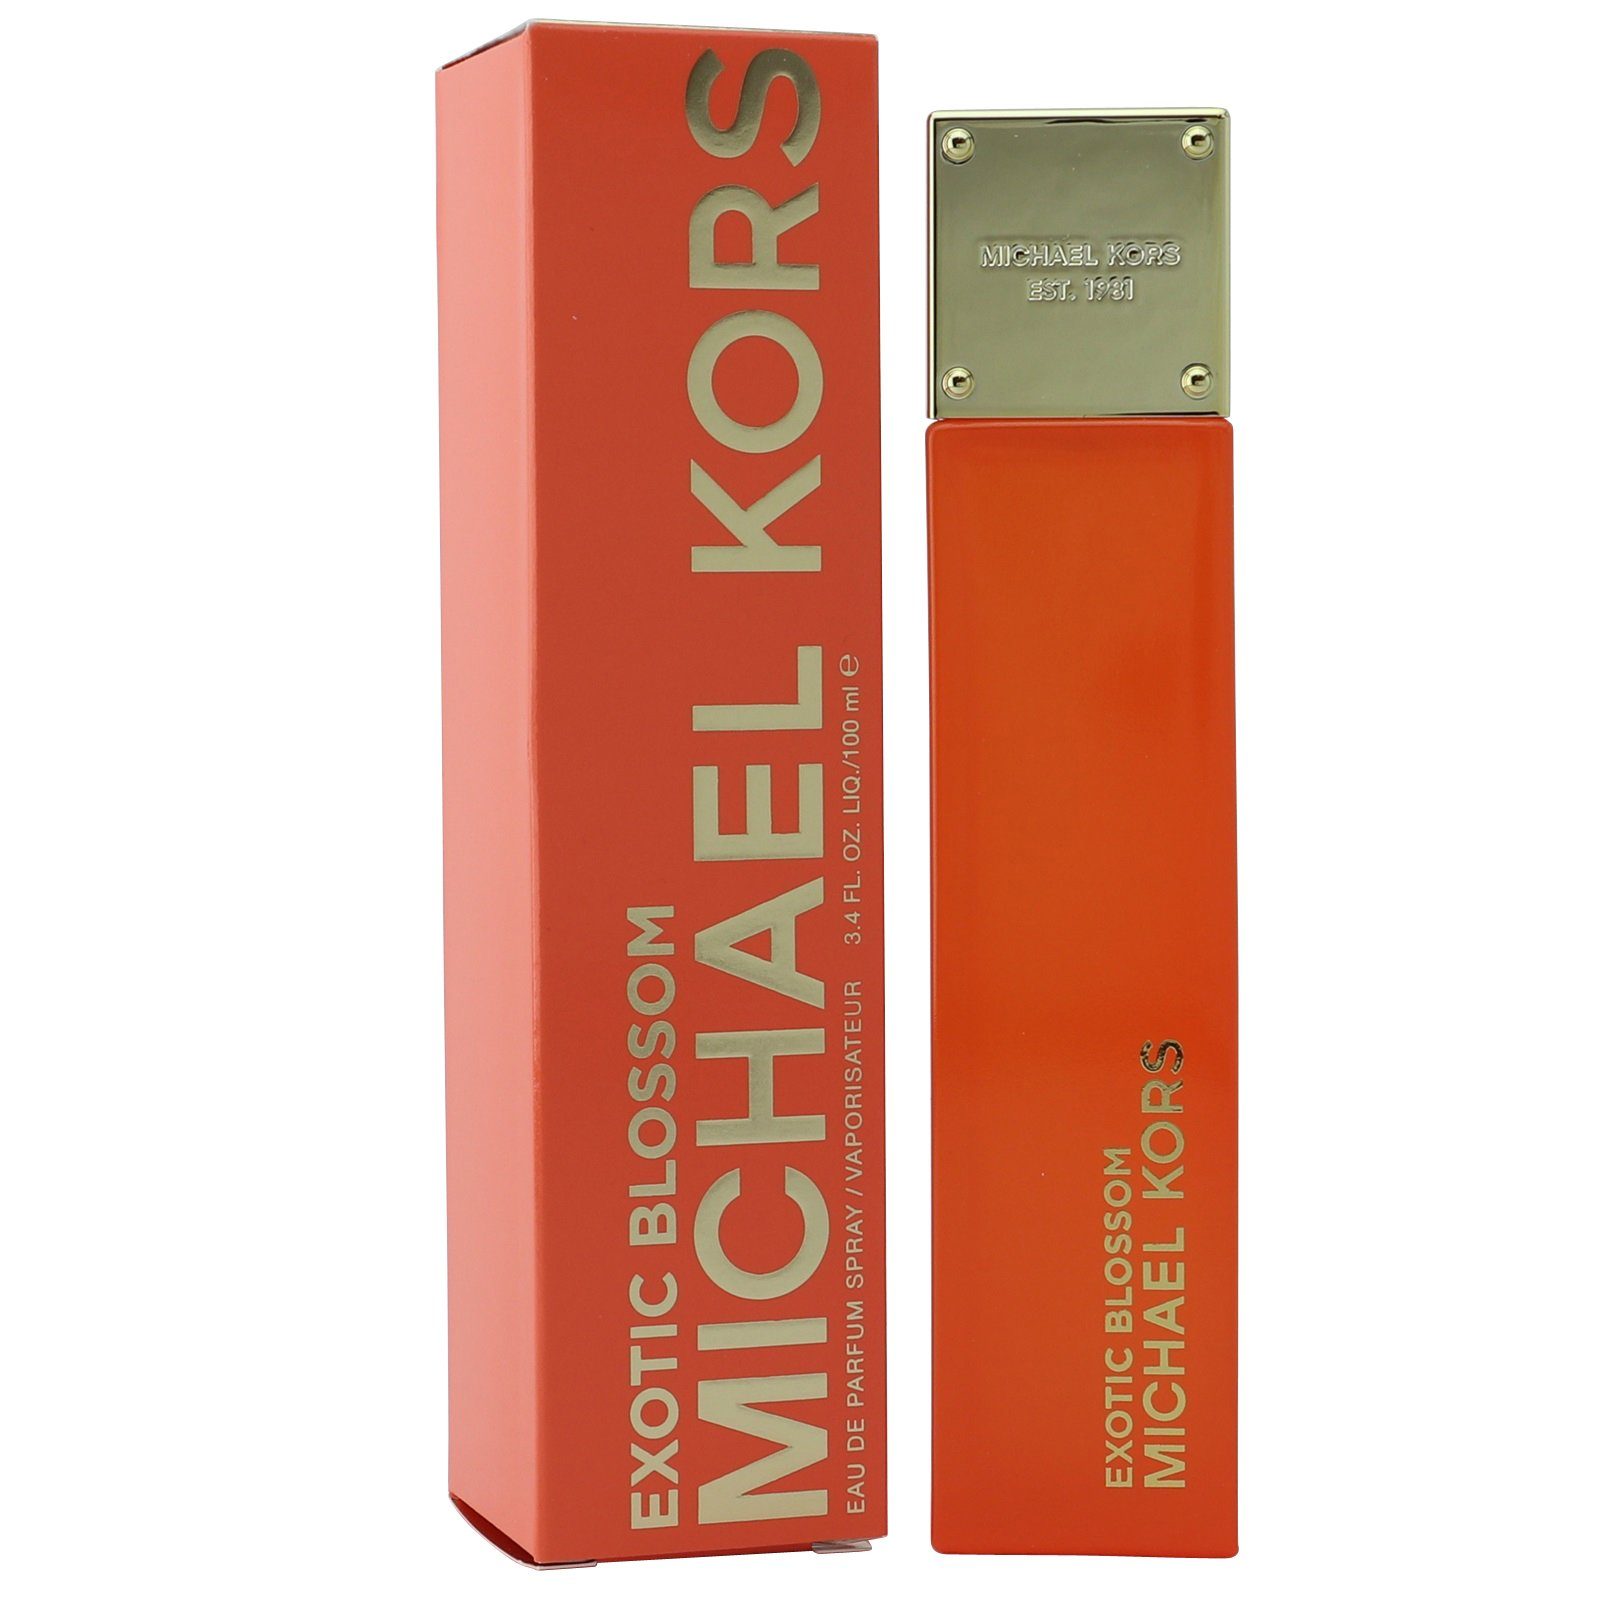 MICHAEL KORS Eau de Parfum Michael Kors Exotic Blossom Eau de Parfum Spray 100 ml